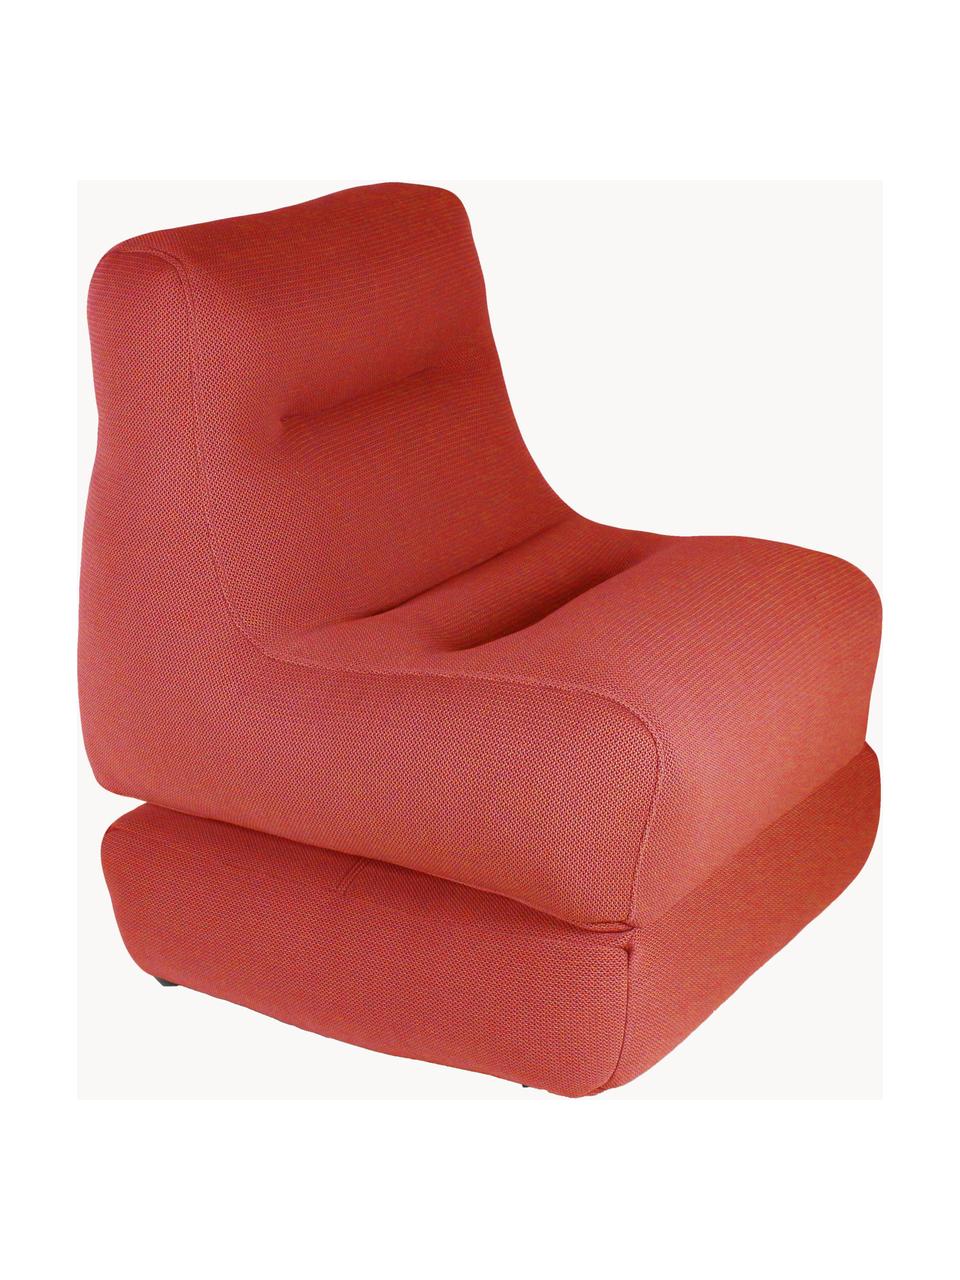 Fauteuil lounge d'extérieur avec fonction chaise longue Sit Pool
, Rouge corail, larg. 75 x haut. 85 cm